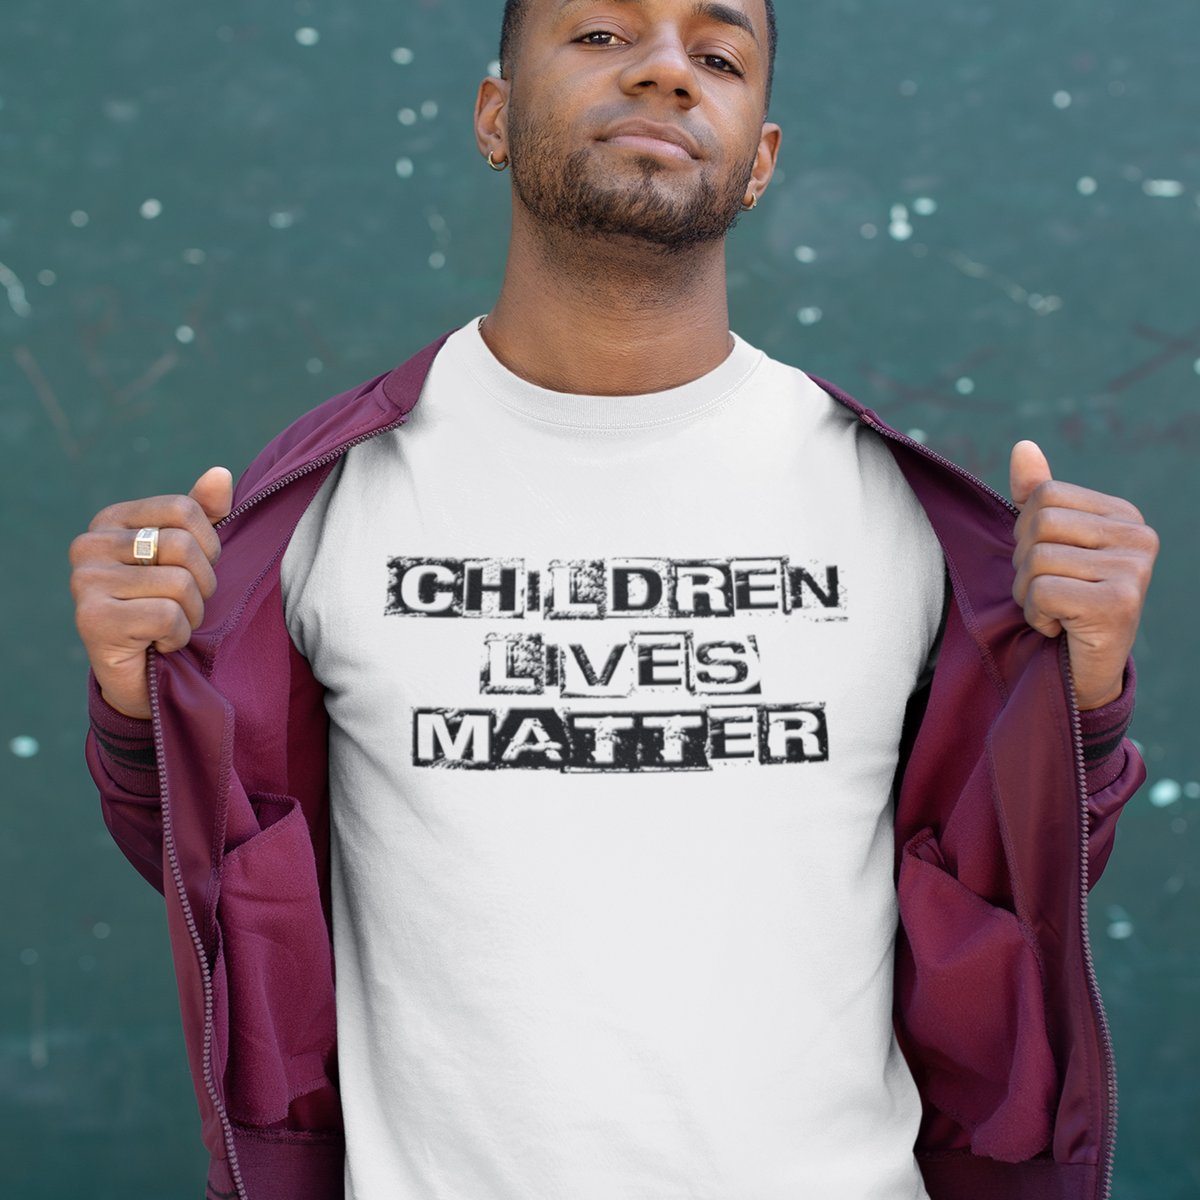 #ChildrenLivesMatter yes they do. 
#SavetheChildren #EndChildTrafficking #Tshirts #StreetWear #UrbanAapparel

hildacerethsven.com